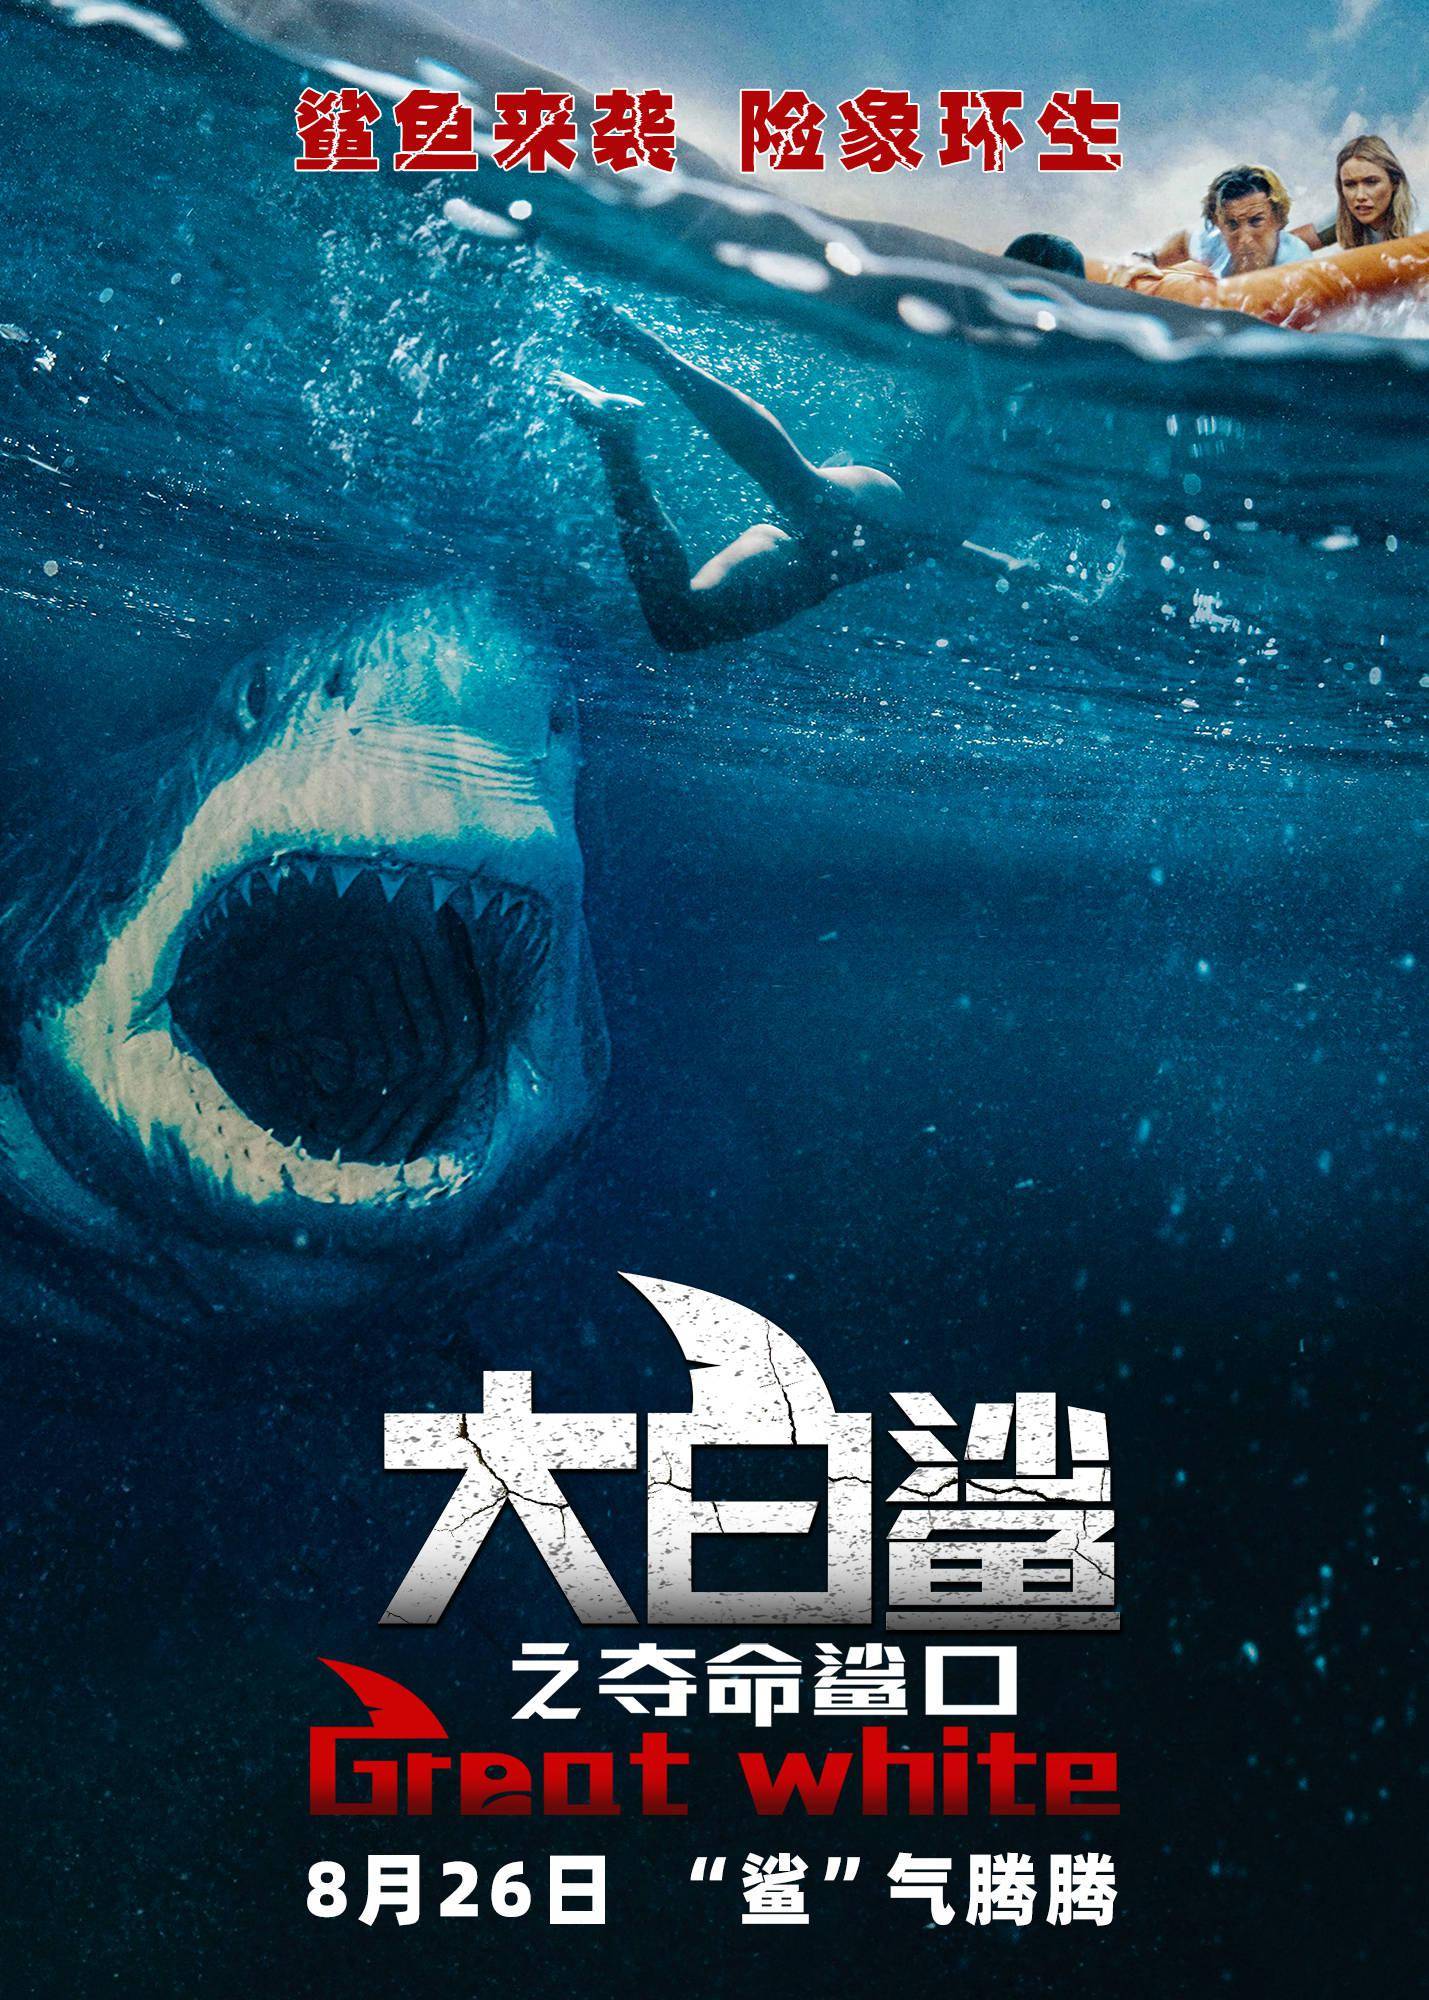 巨齿鲨口在劫难逃 电影《大白鲨之夺命鲨口》8月26日惊魂上映!